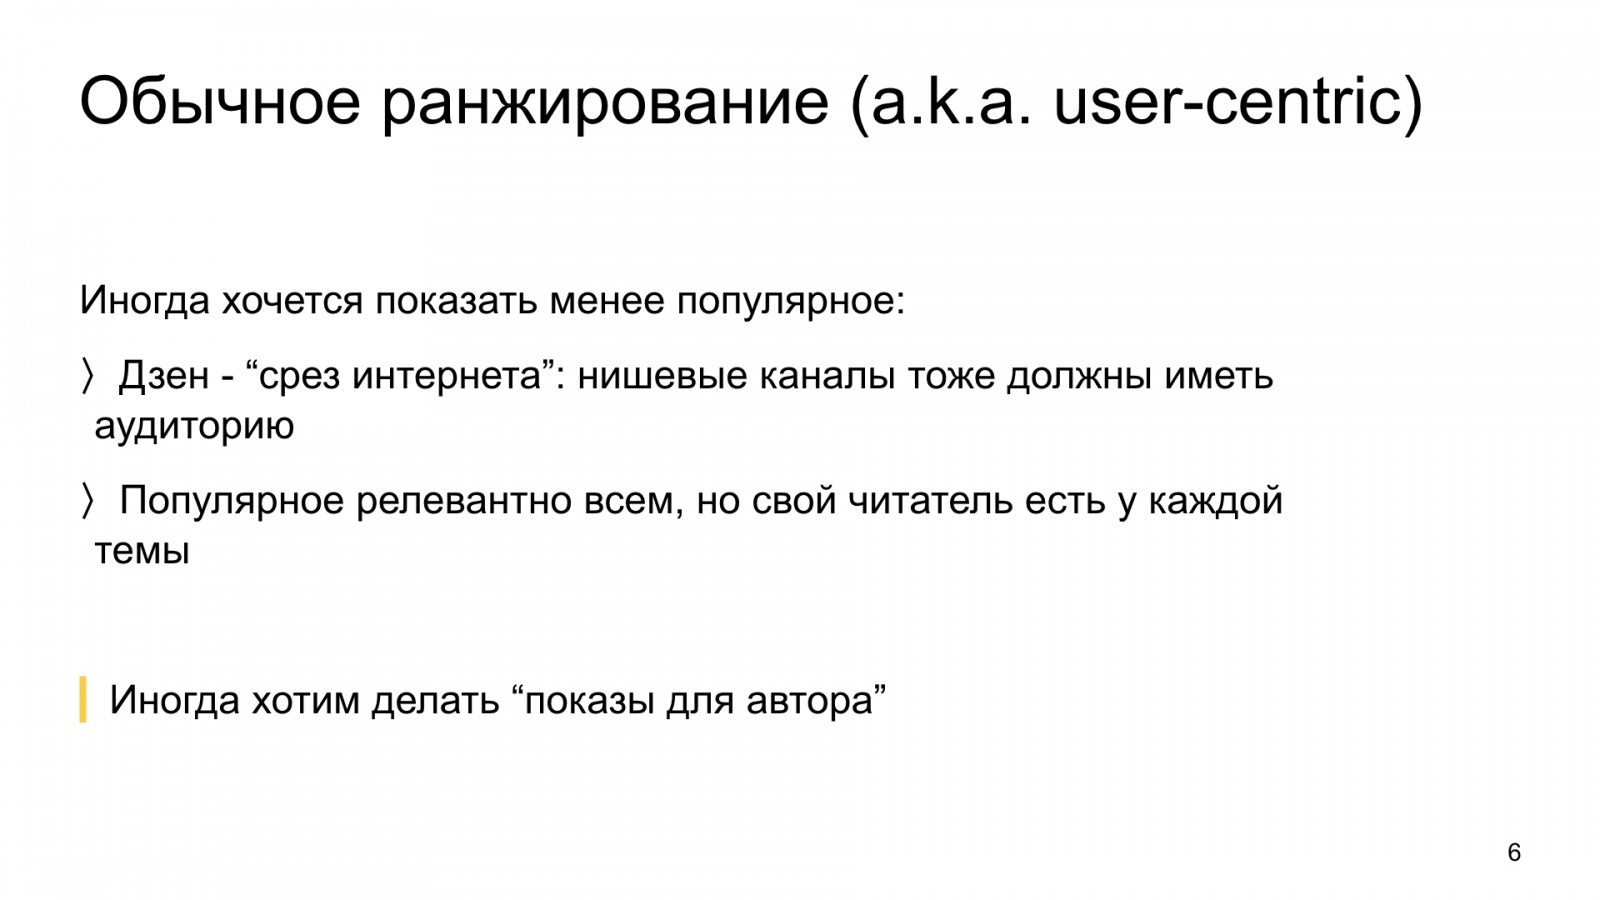 Автороцентричное ранжирование. Доклад Яндекса о поиске релевантной аудитории для авторов Дзена - 6